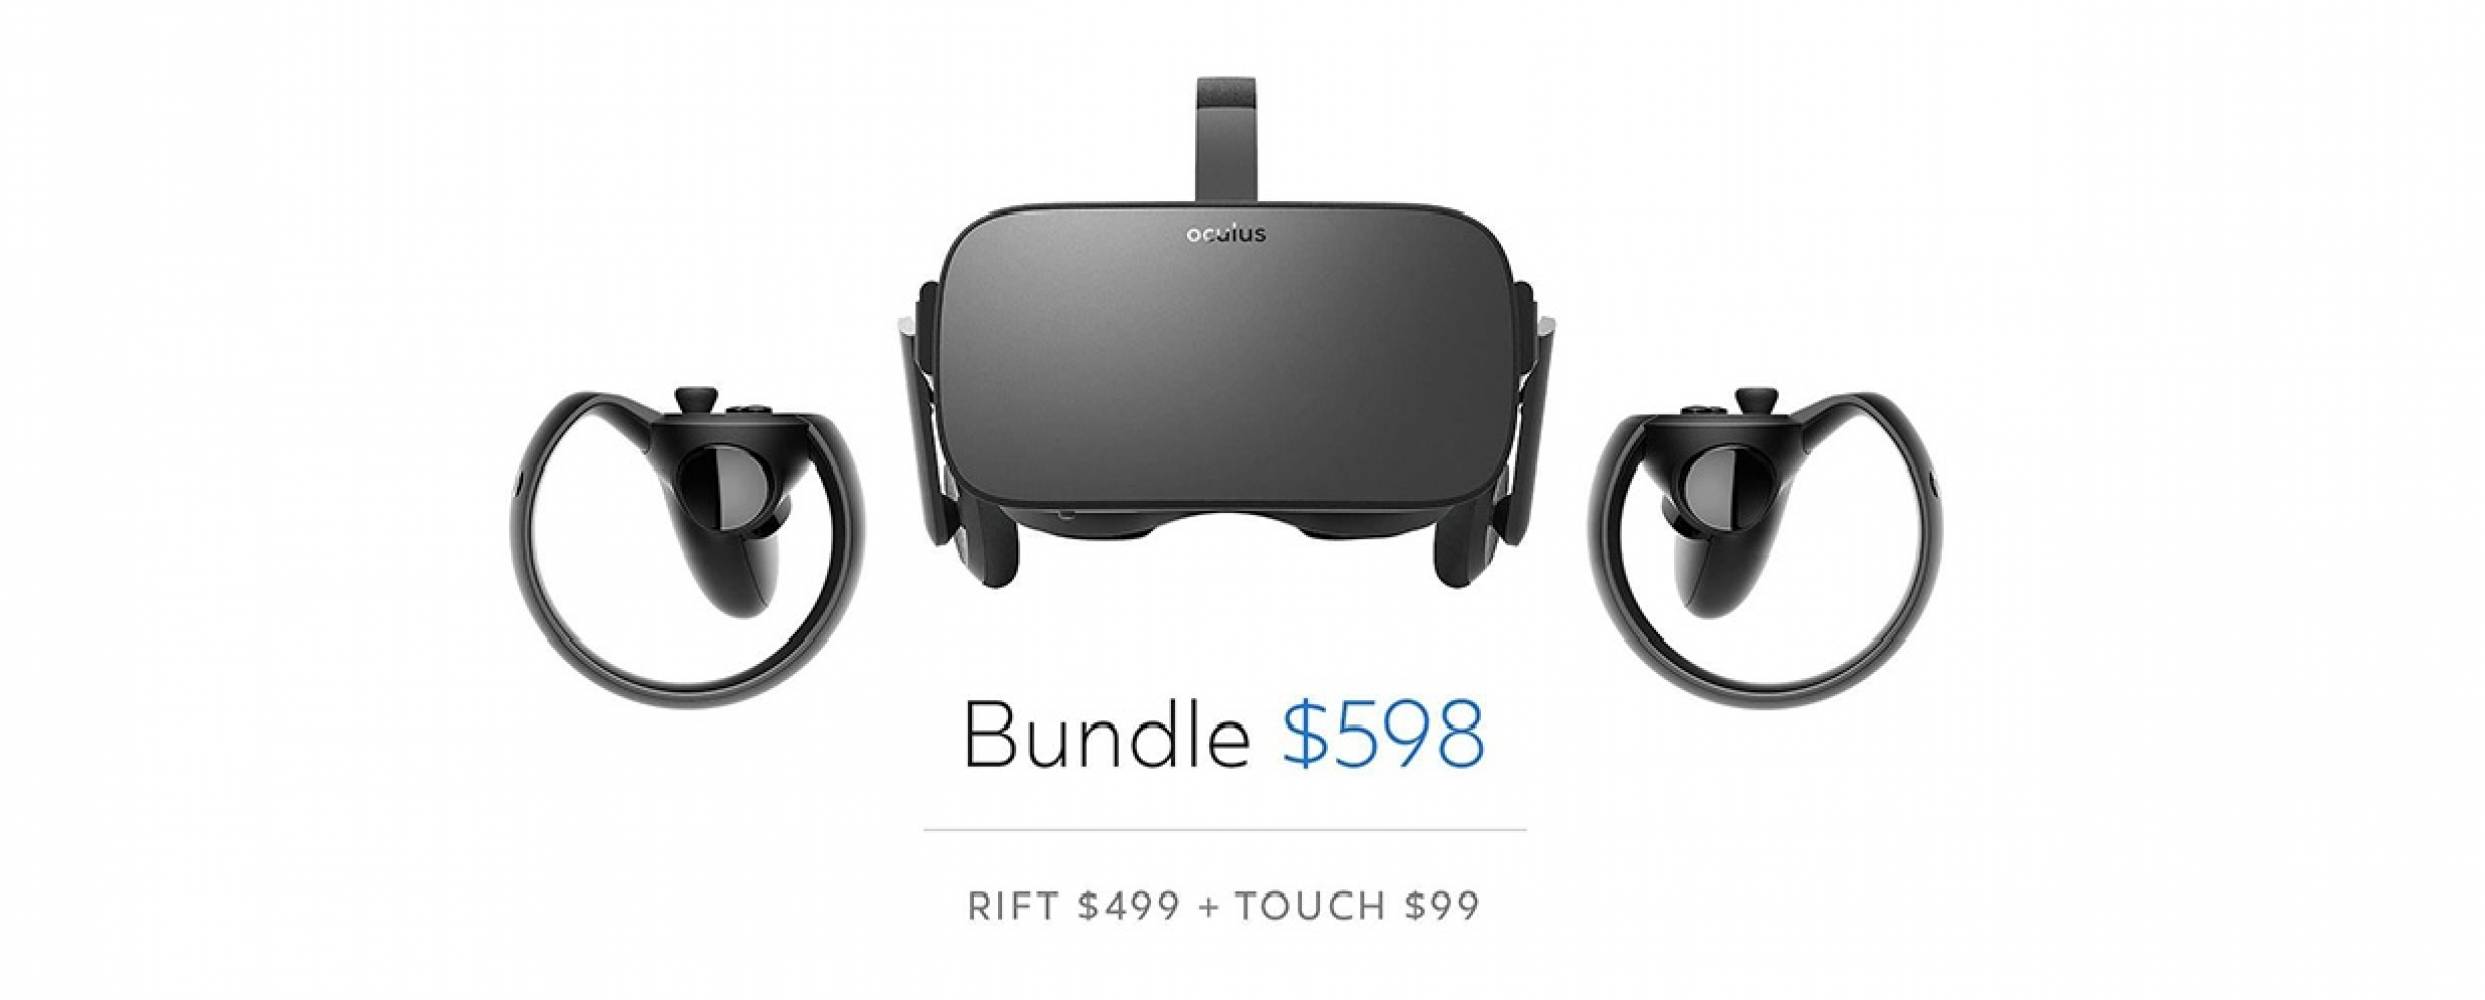 Oculus Rift вече е най-евтиният сериозен VR шлем за РС